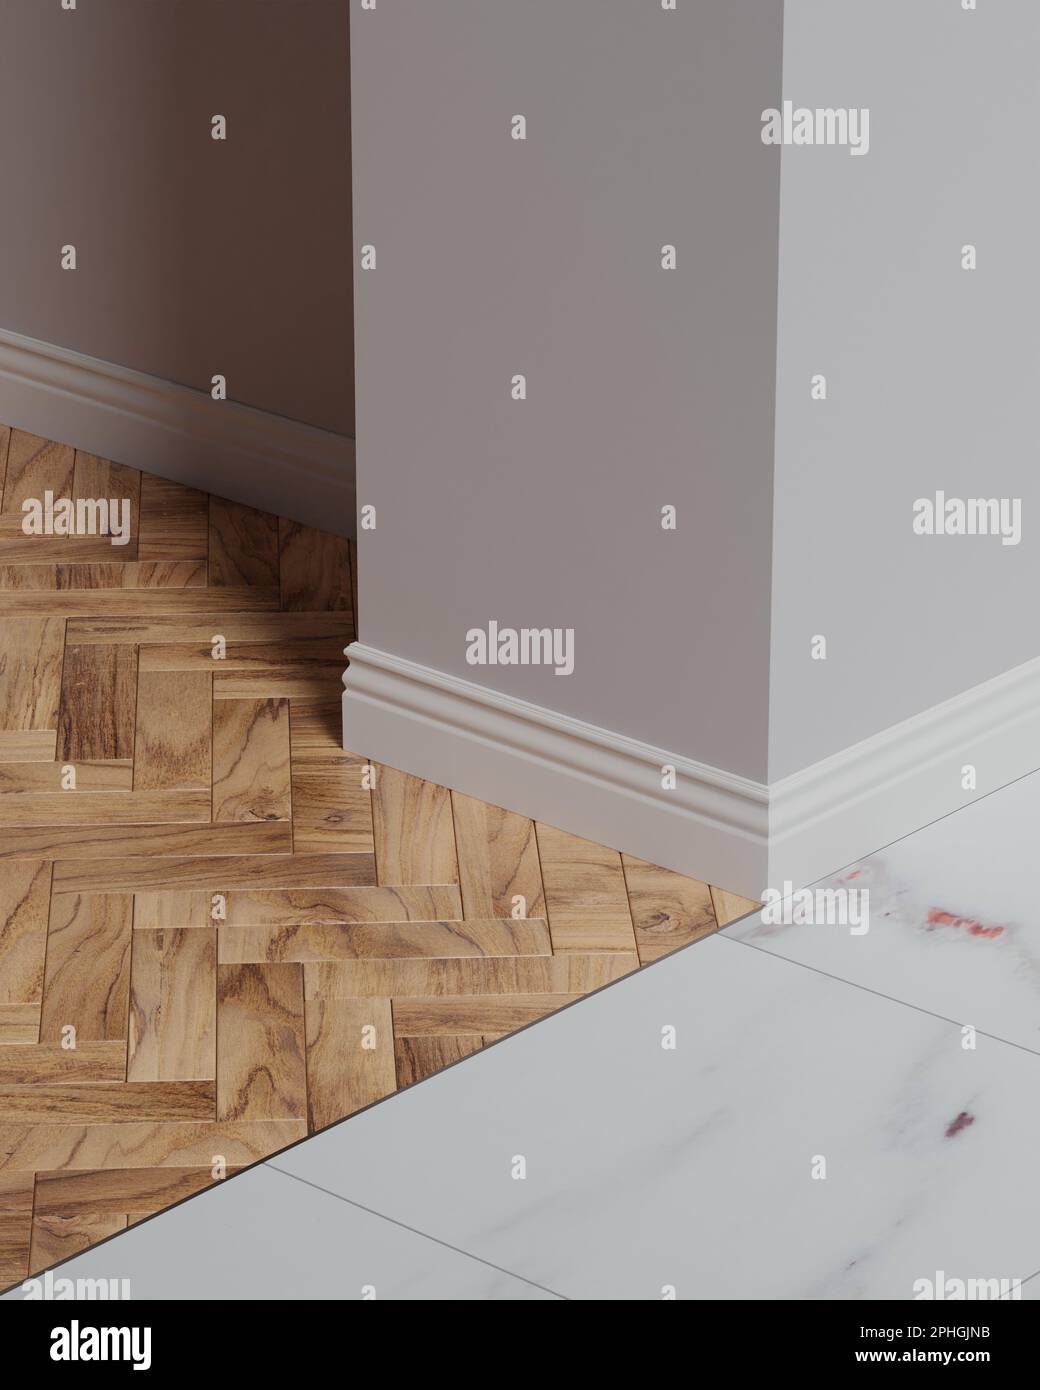 La giunzione di un pavimento in legno di parquet e gres porcellanato senza soglia, una giunzione liscia di due rivestimenti in un unico livello. Conn. Alluminio Foto Stock